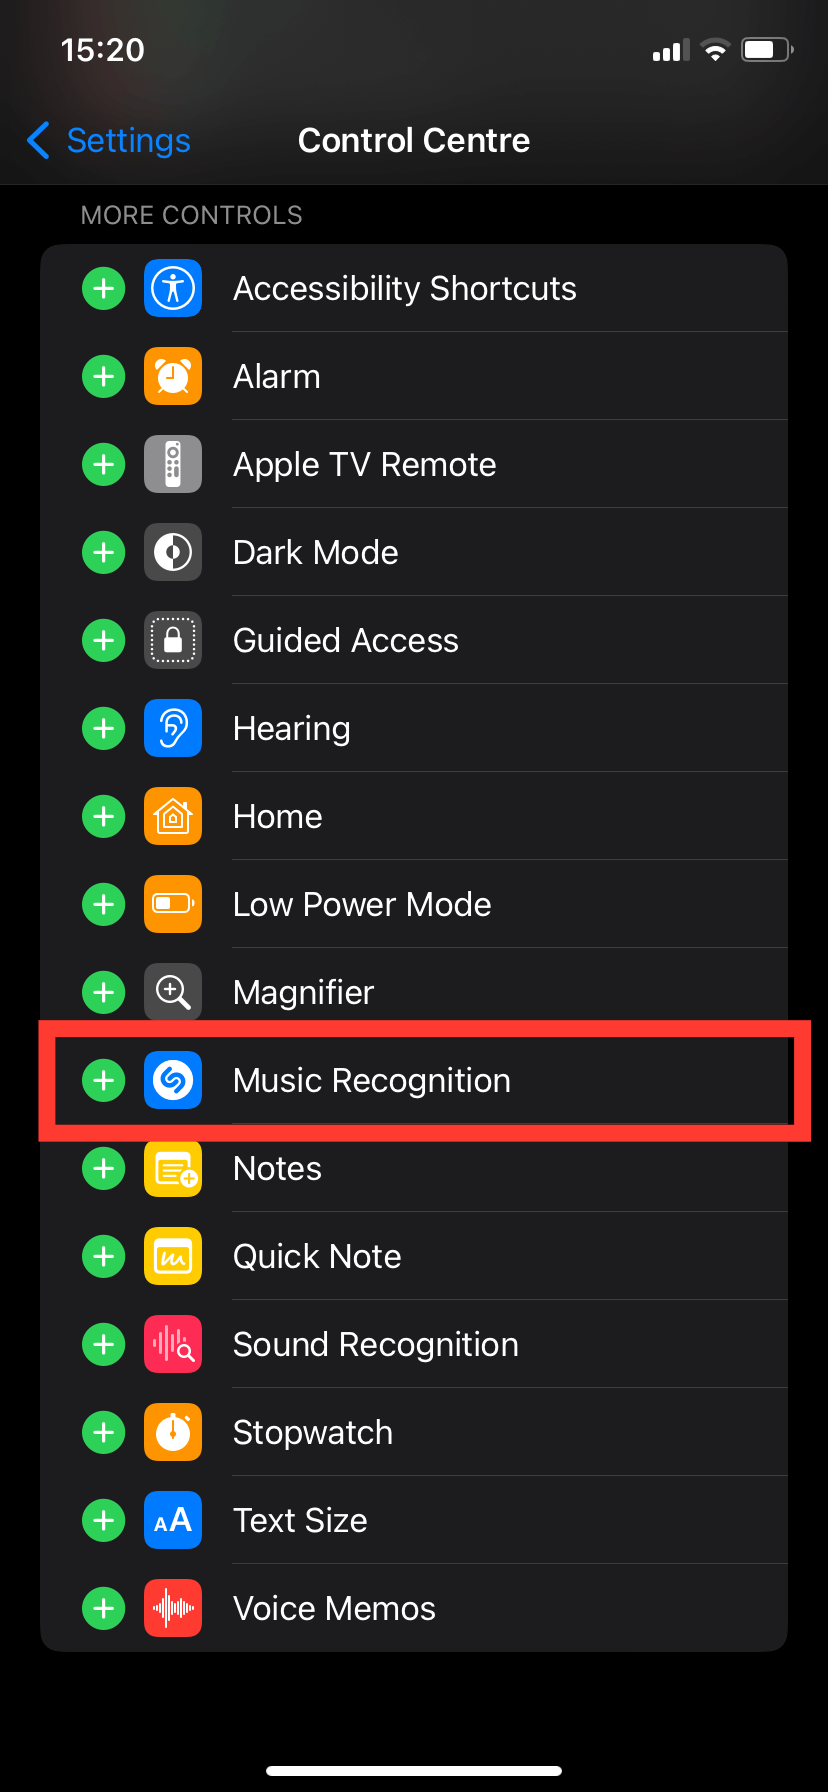 iOS Control Centre settings inside the Settings menu